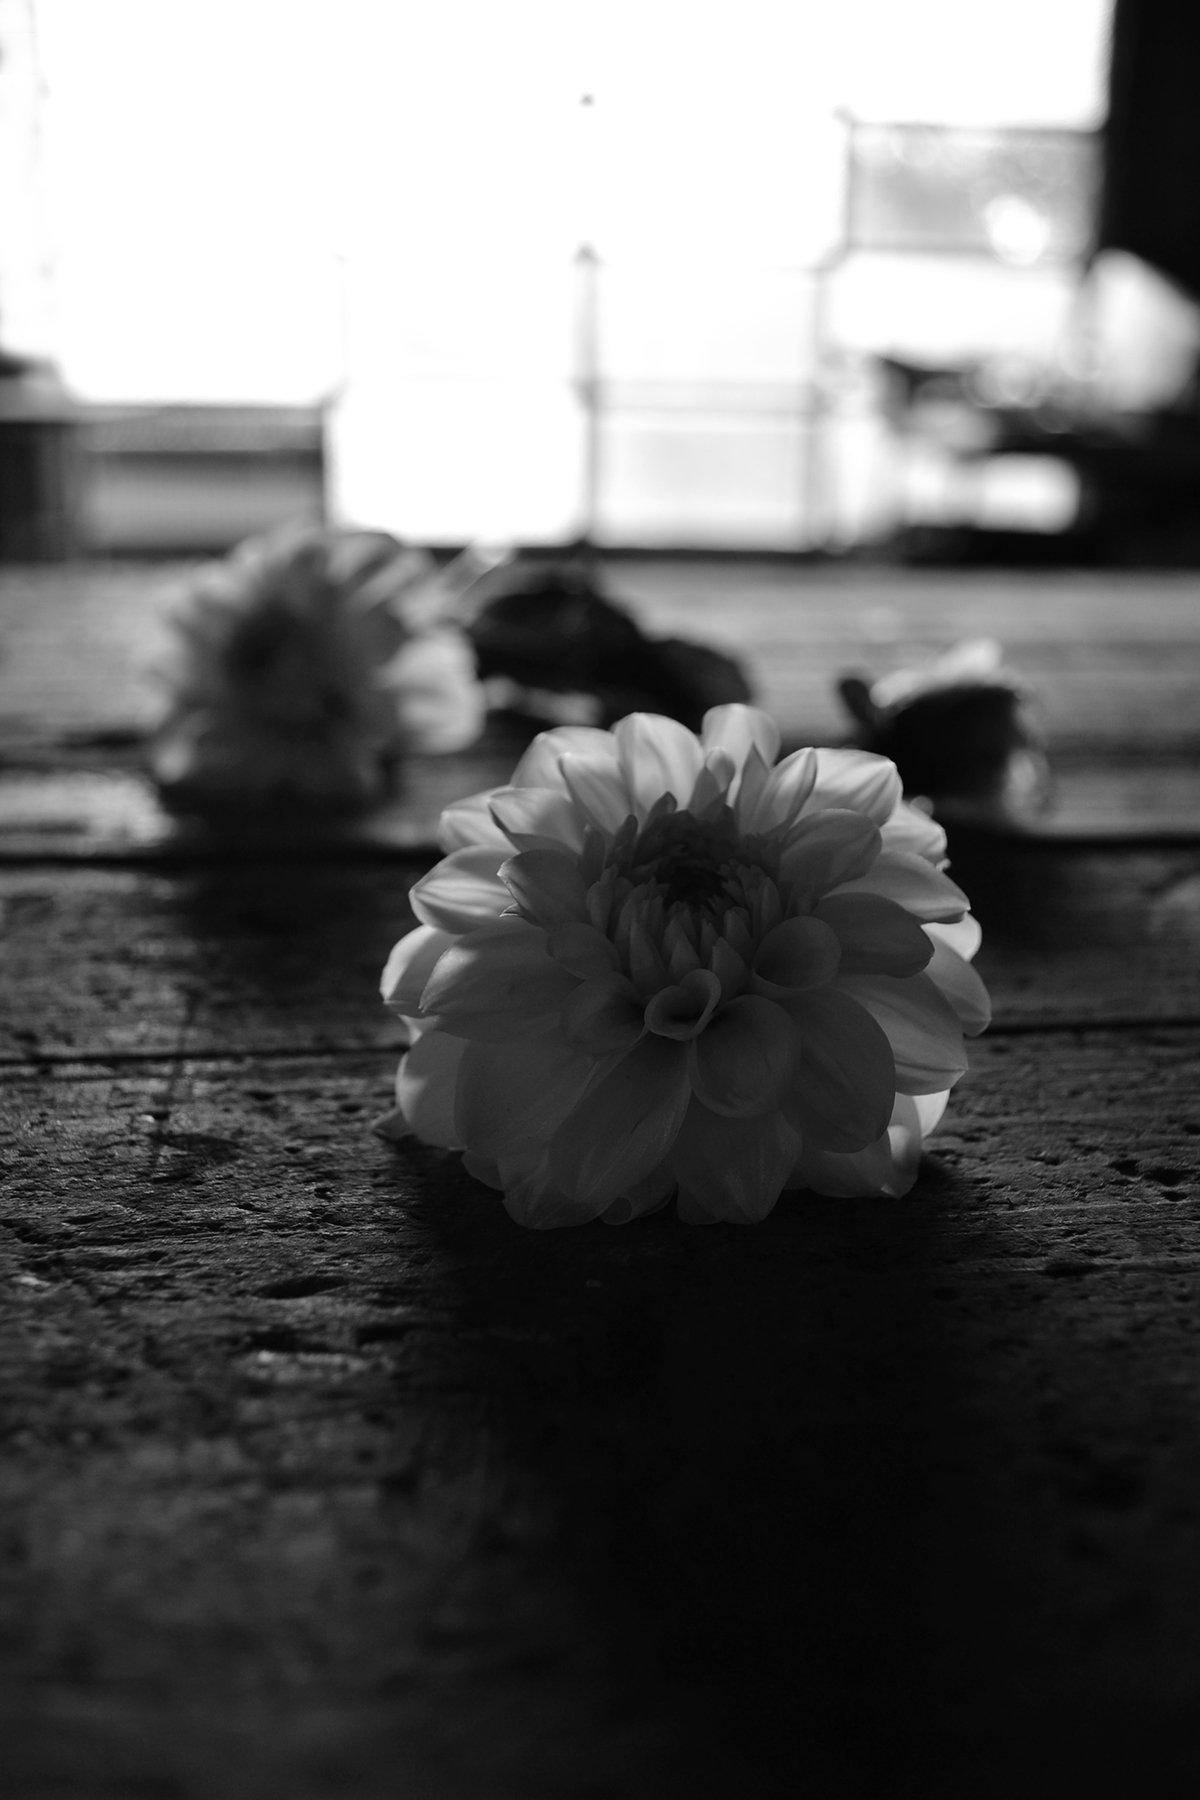 flor blanco y negro contraste contraluz Ventana Dalia bodegon